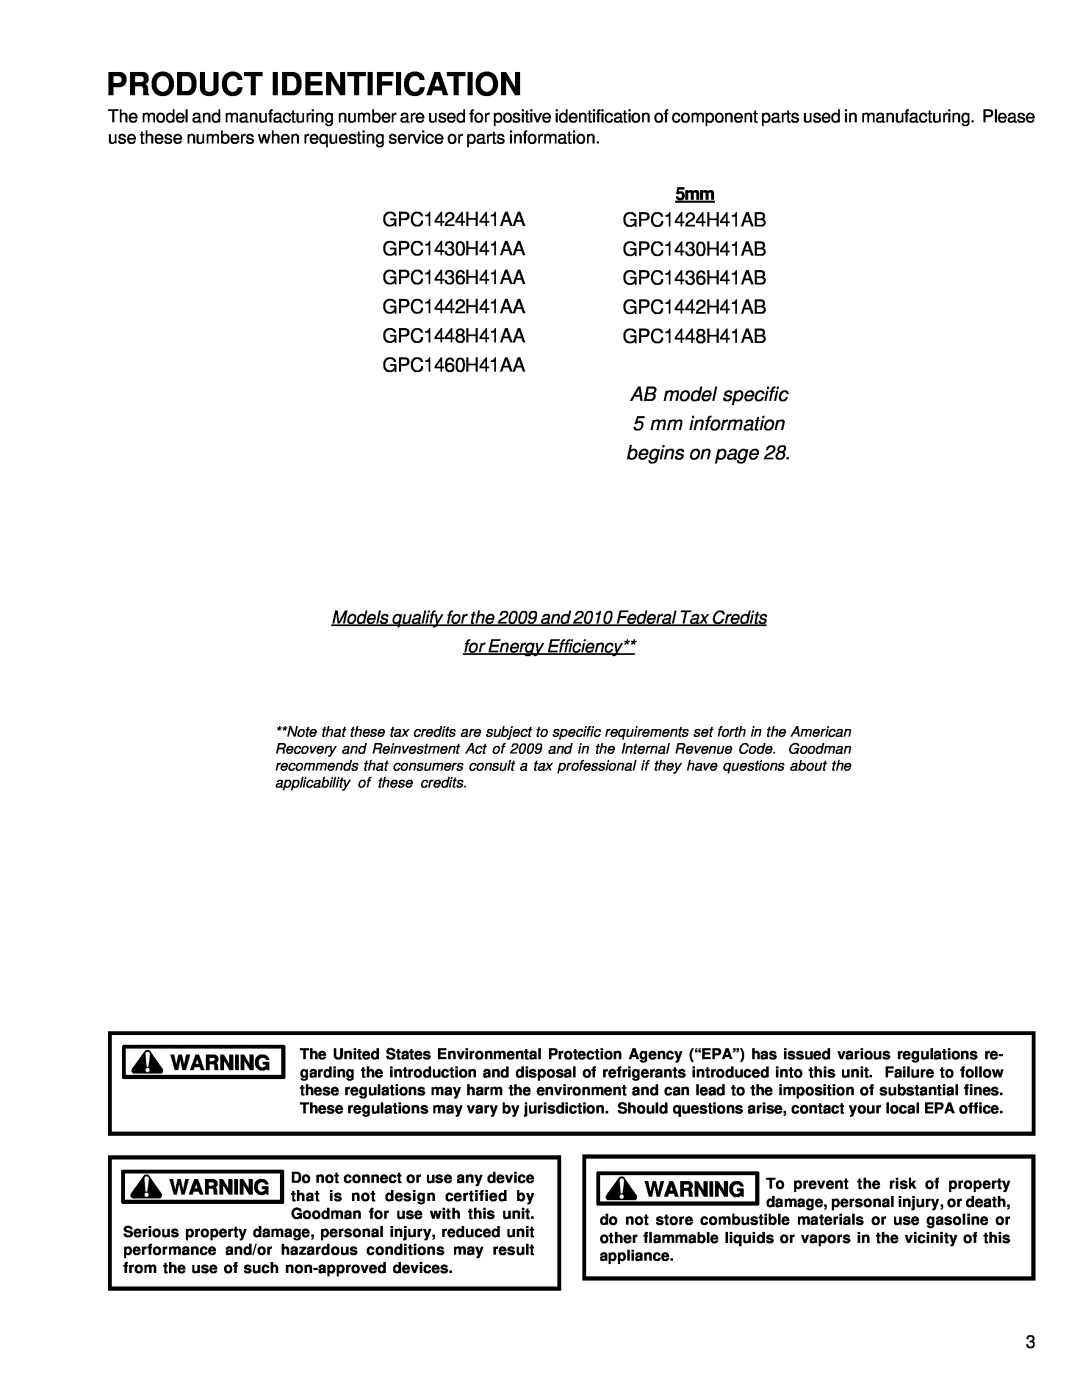 Goodman Mfg GPC 14 SEER R-410 Package Air Conditioners with R-410A GPC1424H41AA GPC1424H41AB GPC1430H41AA GPC1430H41AB 